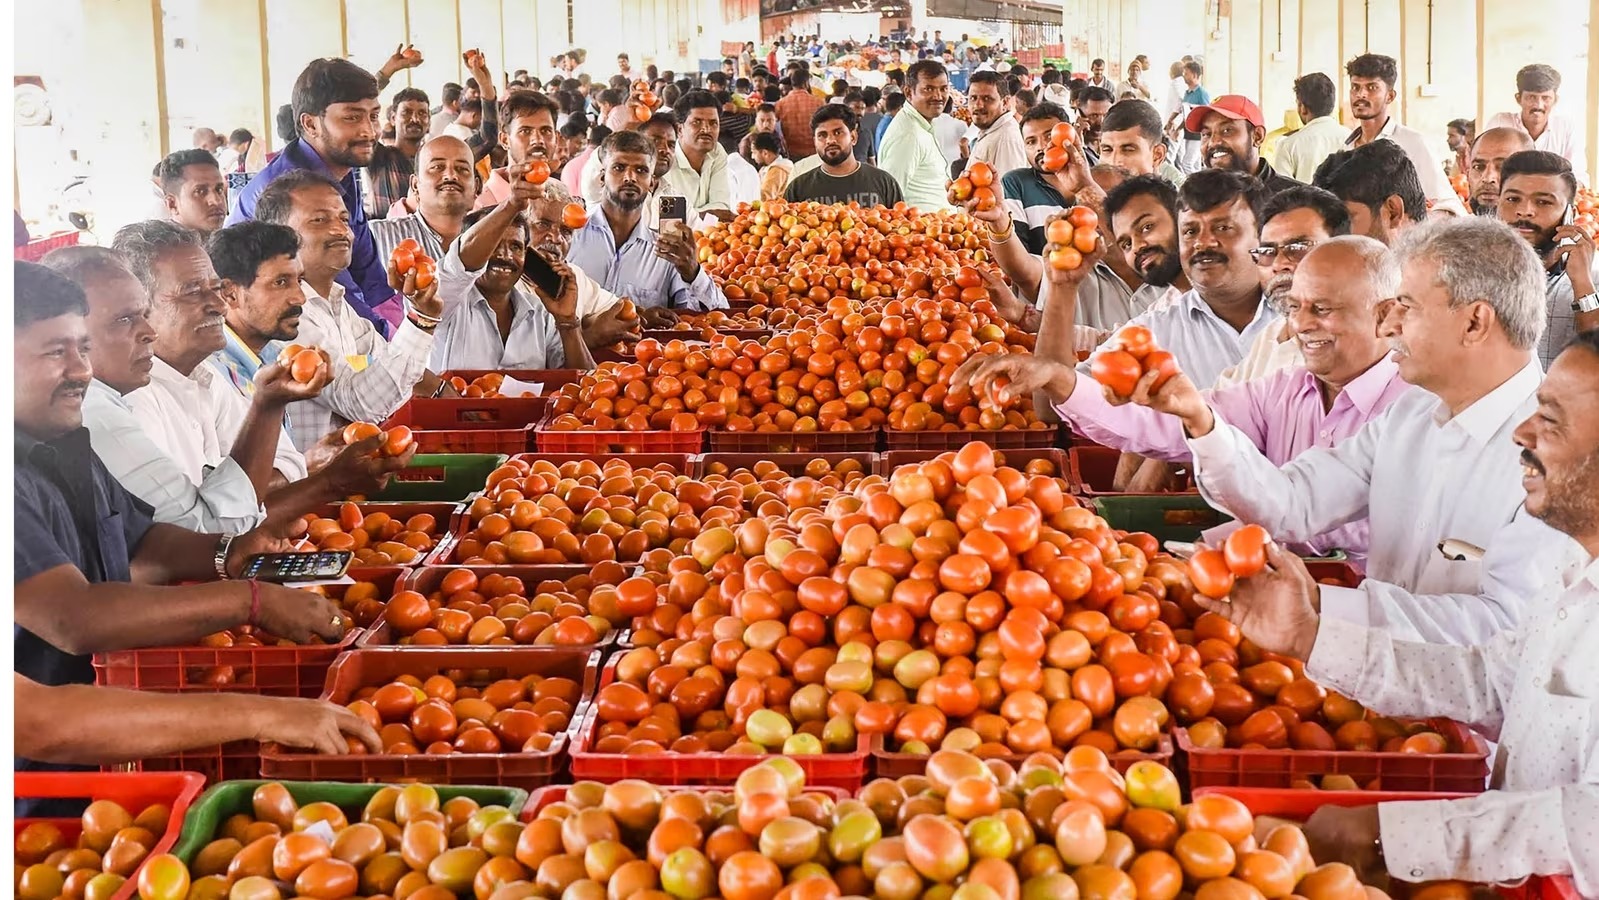 ٹماٹر کی قیمت 160 فی کلوسے زیادہ ہو گئی